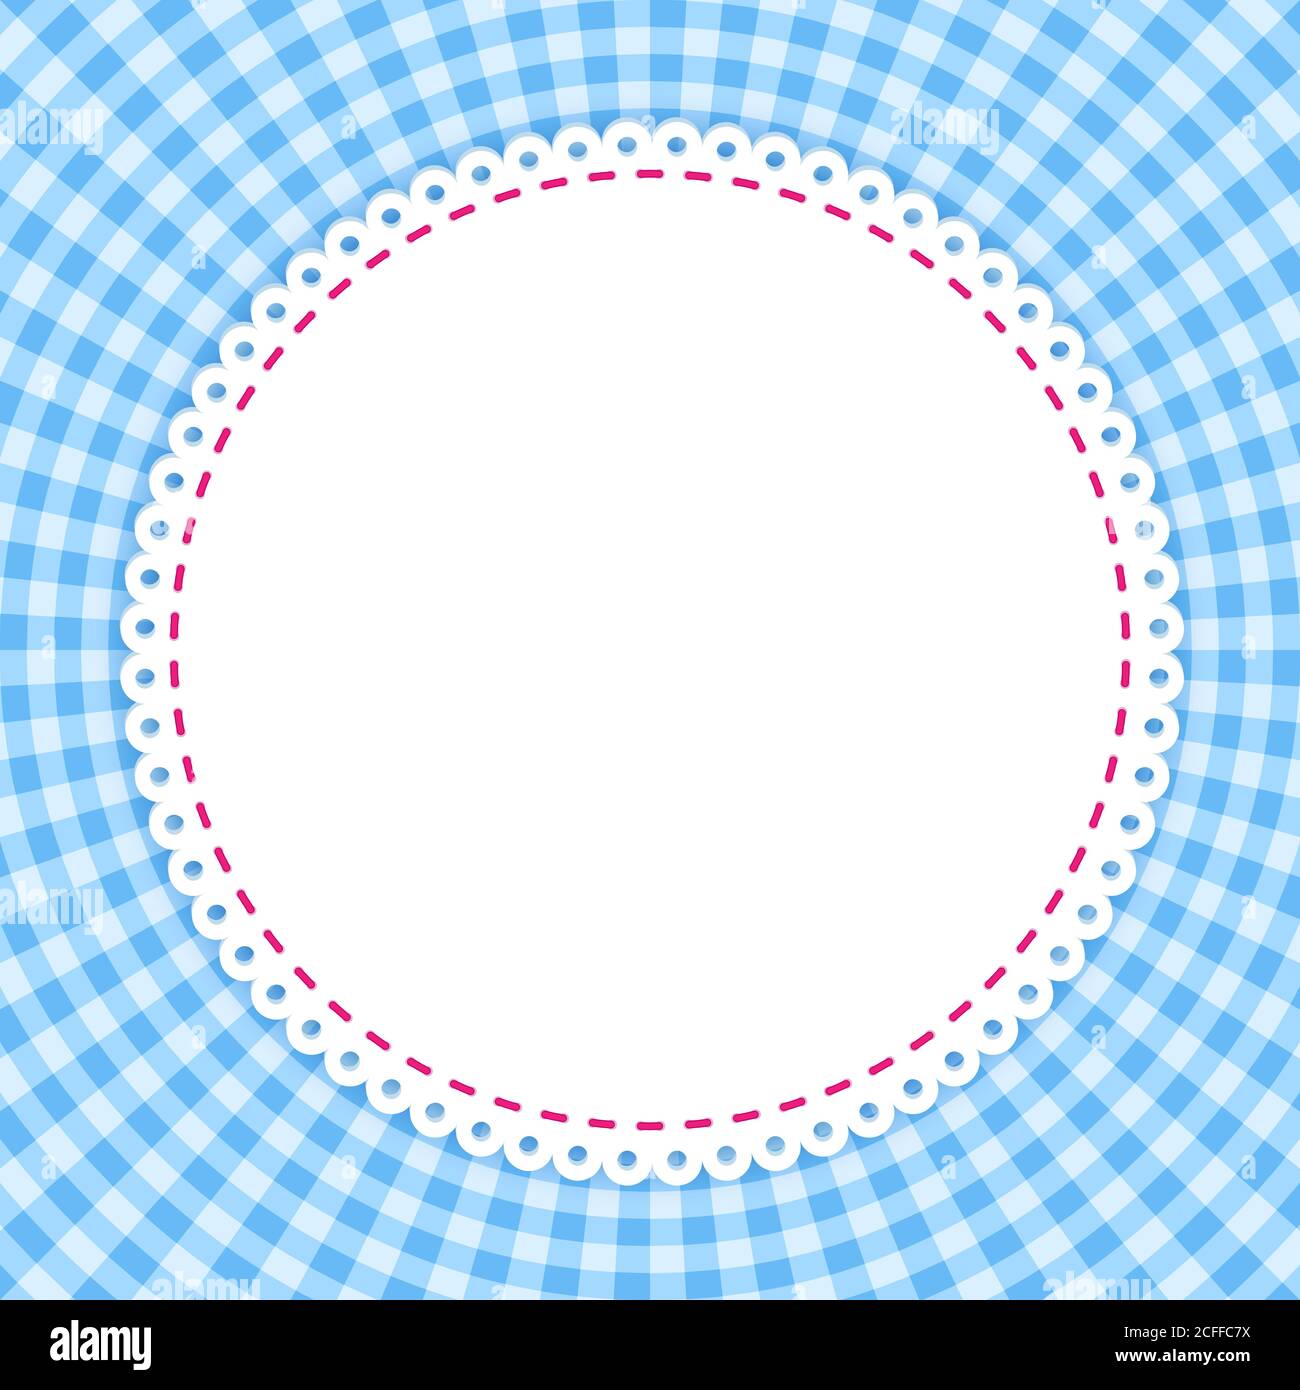 Cornice rotonda con classico motivo tovaglia. Tradizionale motivo di Gingham in colori blu. Modello vettoriale a scacchi. Sfondo geometrico astratto. Illustrazione Vettoriale